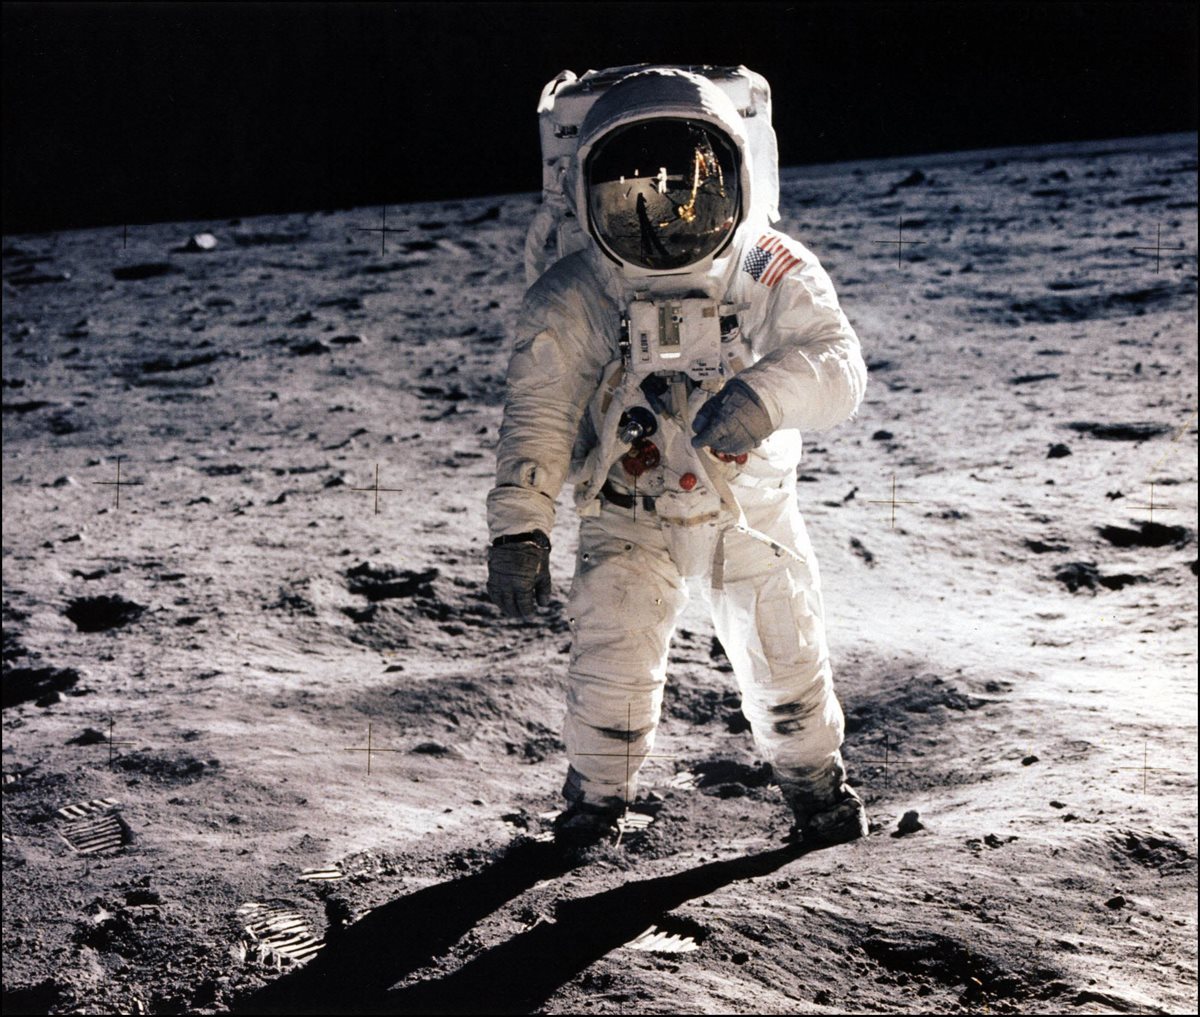 1969: portentosa hazaña, el hombre llega a la Luna